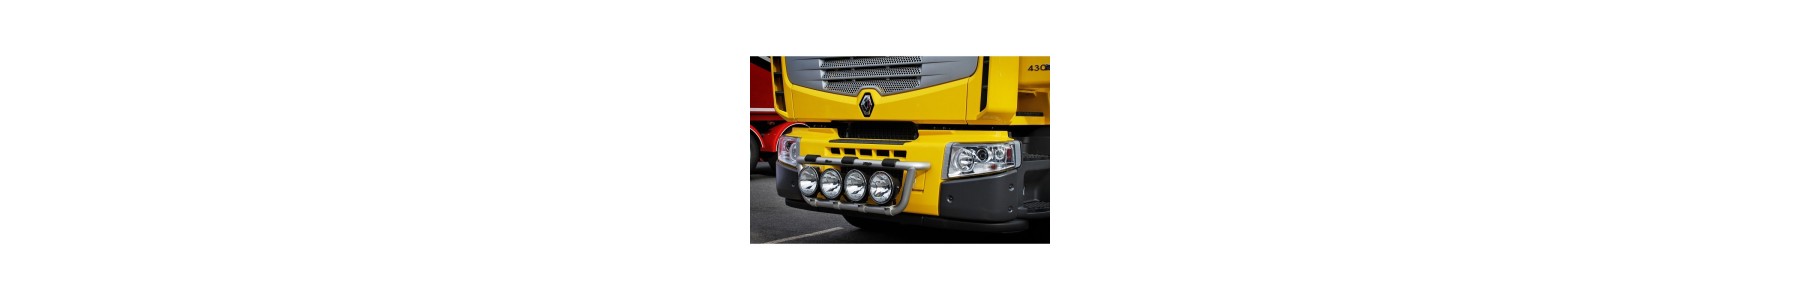 Rampe basse pour votre camion Renault PREMIUM - 22h22 : Vente d'accessoires tuning poids-lourds